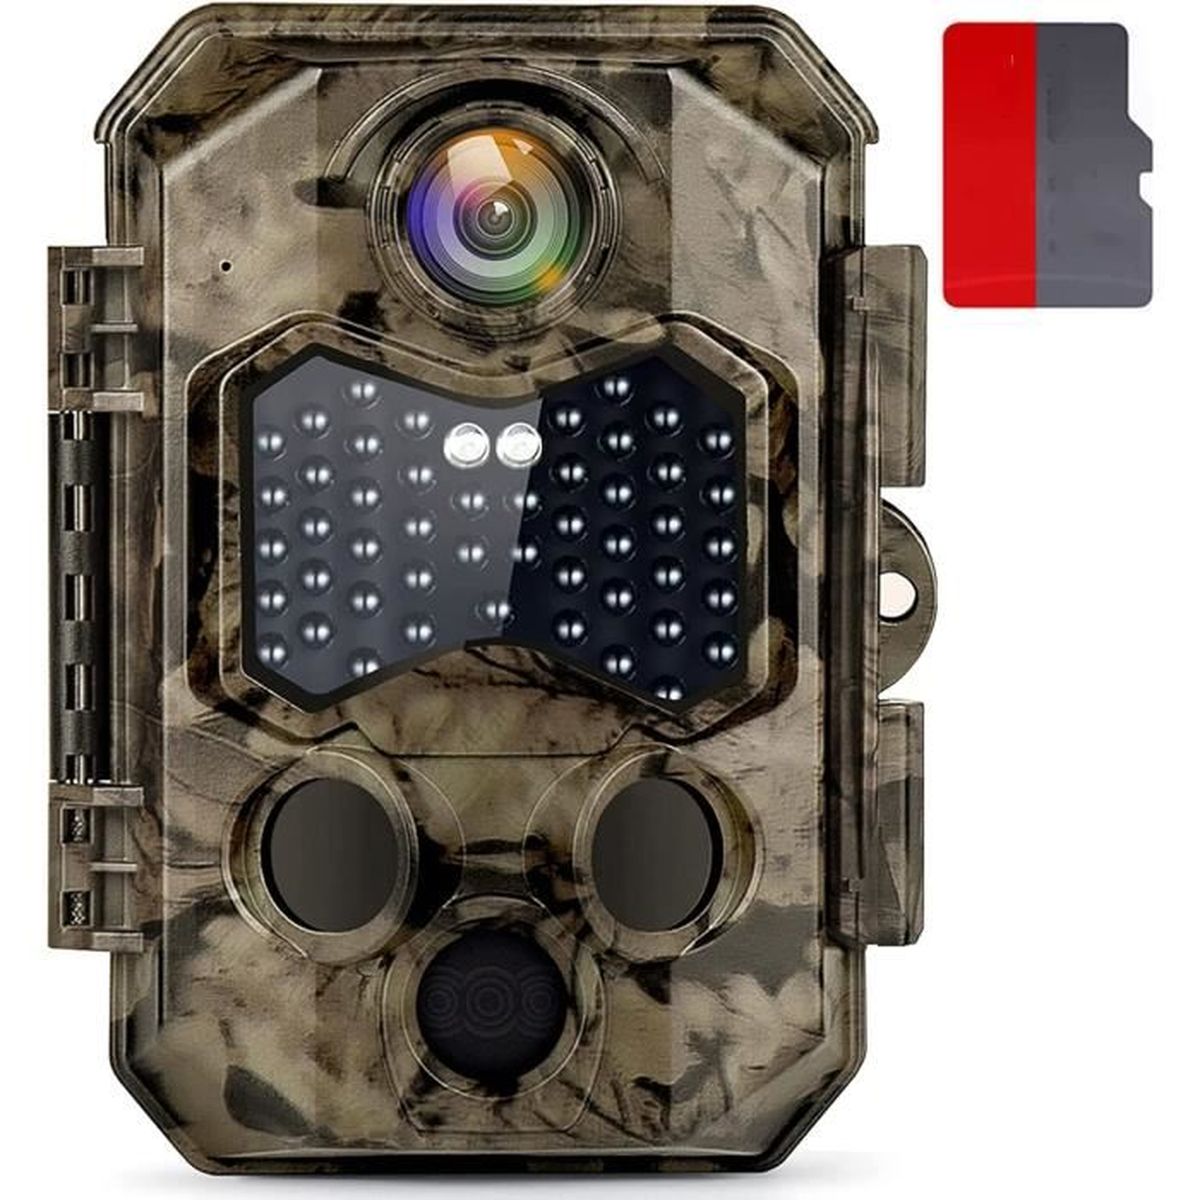 24MP 4K Caméra de Chasse Caméra de Surveillance WIFI Bluetooth,0.2s Caméra Chasse Infrarouge 46 pcs no Glow IR LEDs Camera de Chasse Nocturne Imperméable IP66 